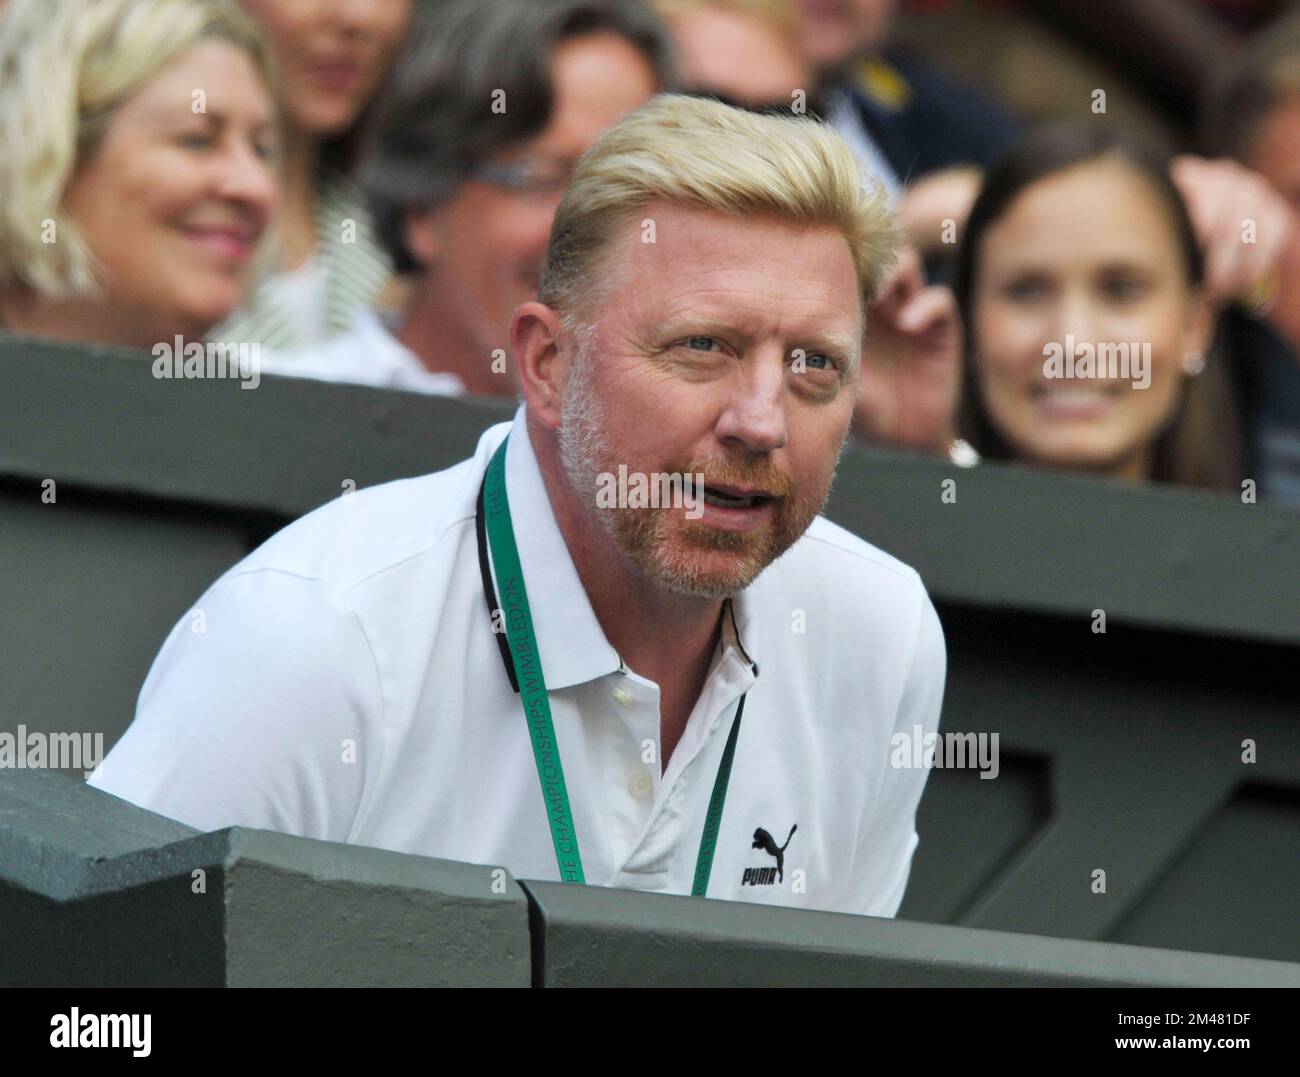 27 juin 2014, Wimbledon, Londres. Boris Becker entraîneur de Novak Djokovic prend son siège avant le match des célibataires de Novak Djokovic contre Gilles Simon pour hommes. Banque D'Images